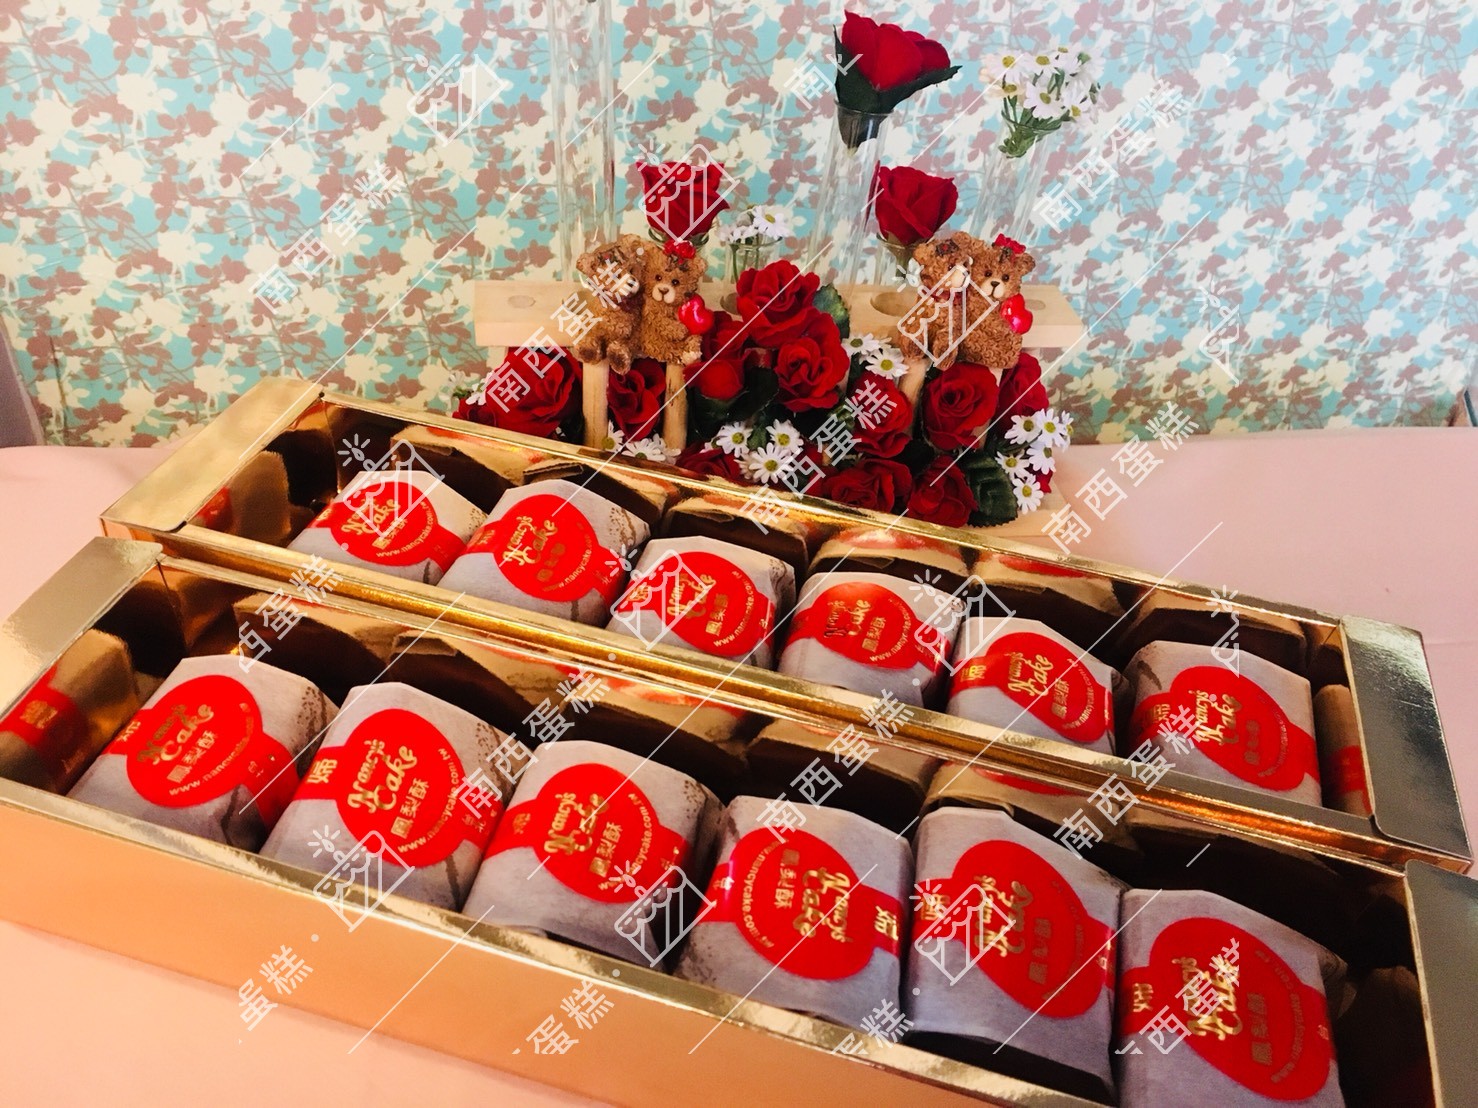 台北鳳梨酥禮盒推薦::南西造型蛋糕鳳梨酥 02-2781-5122